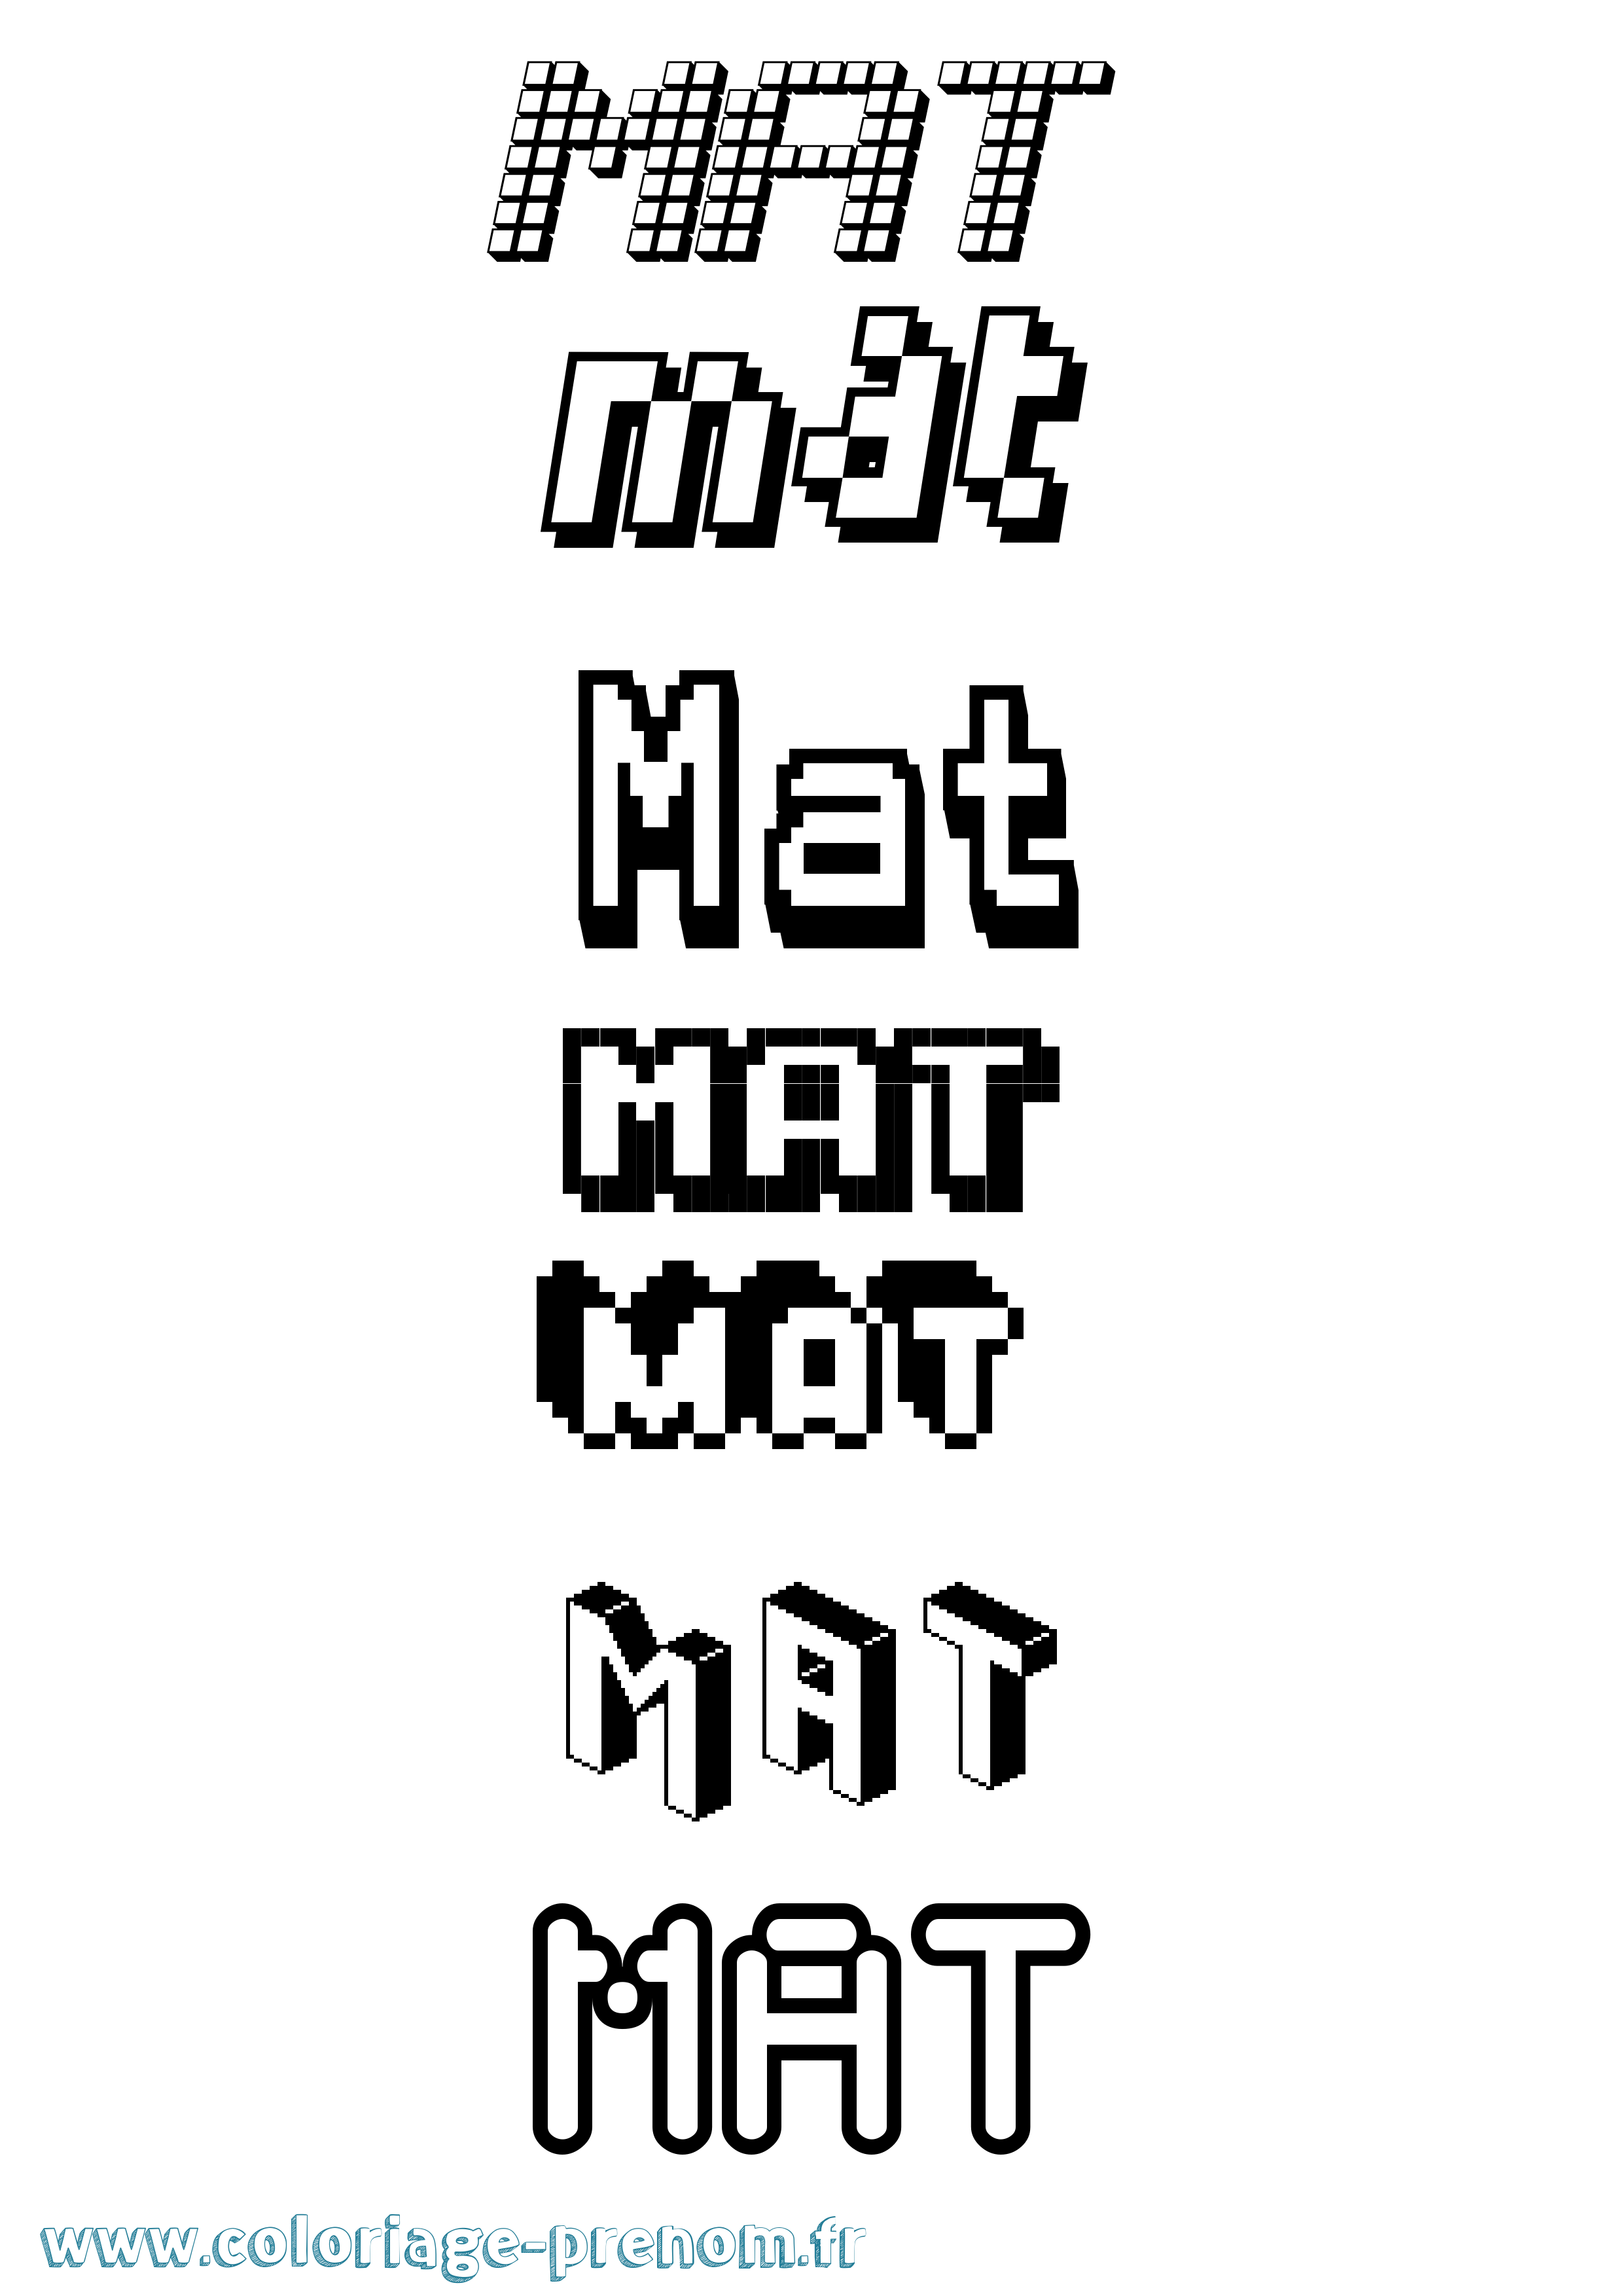 Coloriage prénom Mat Pixel